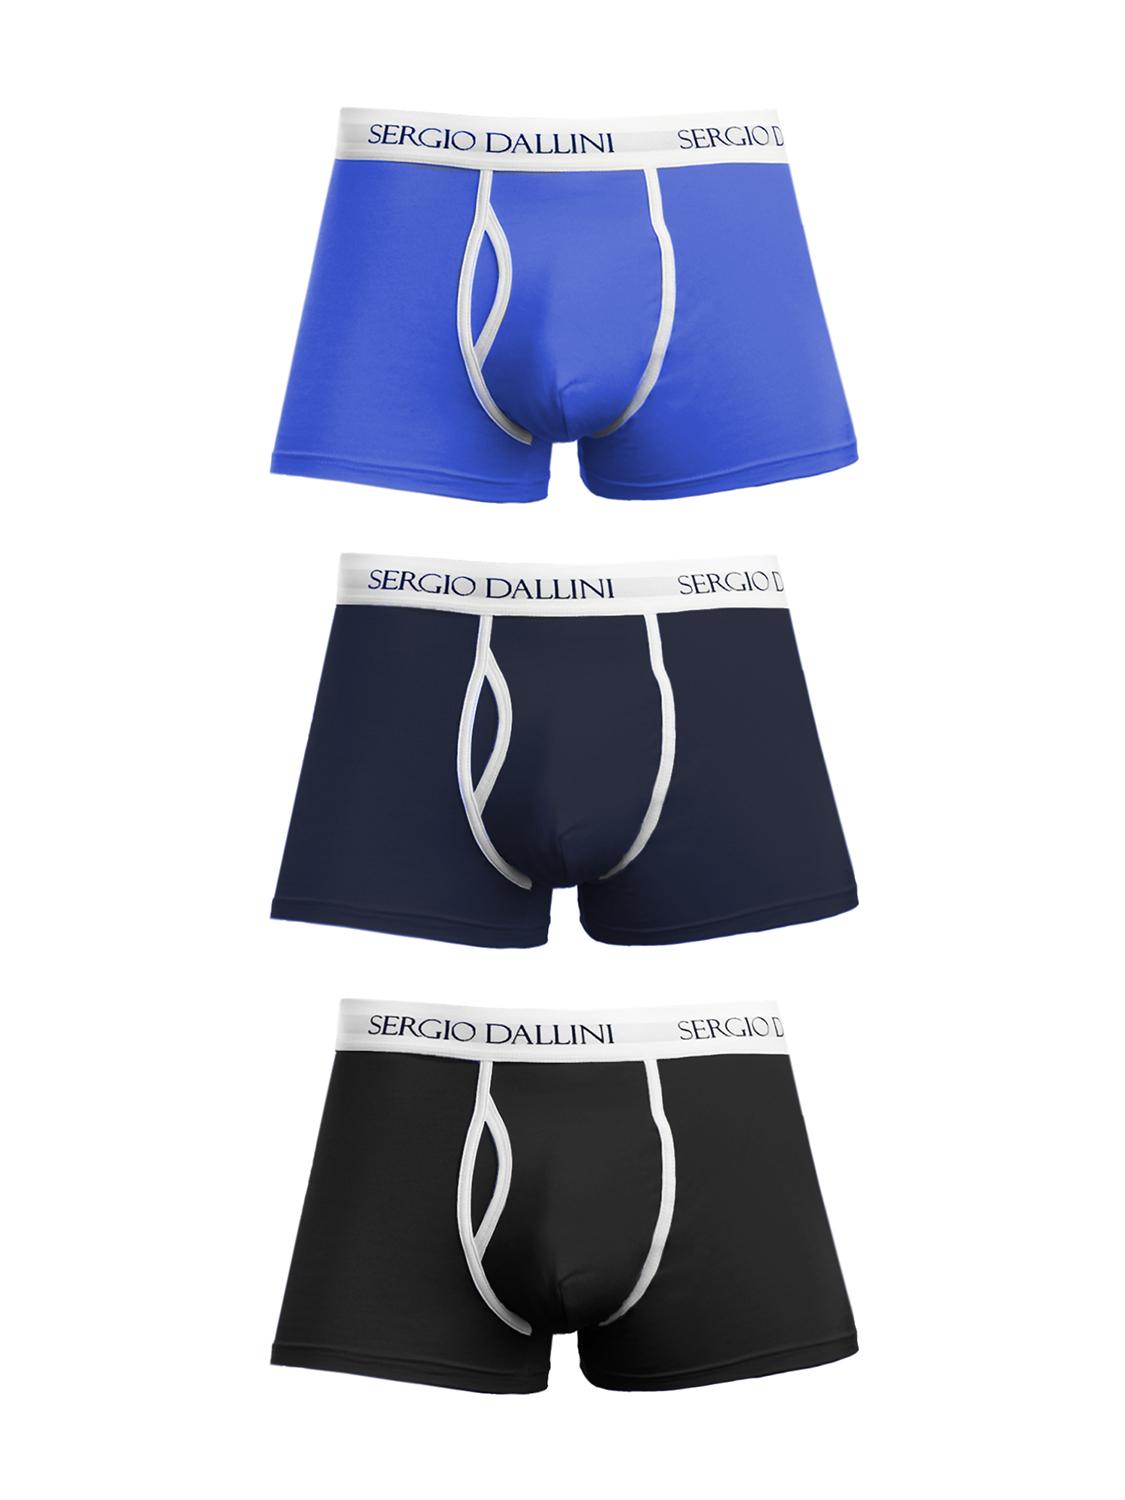 Комплект мужских трусов Sergio Dallini SD941 черного и синего цвета, размер XL.